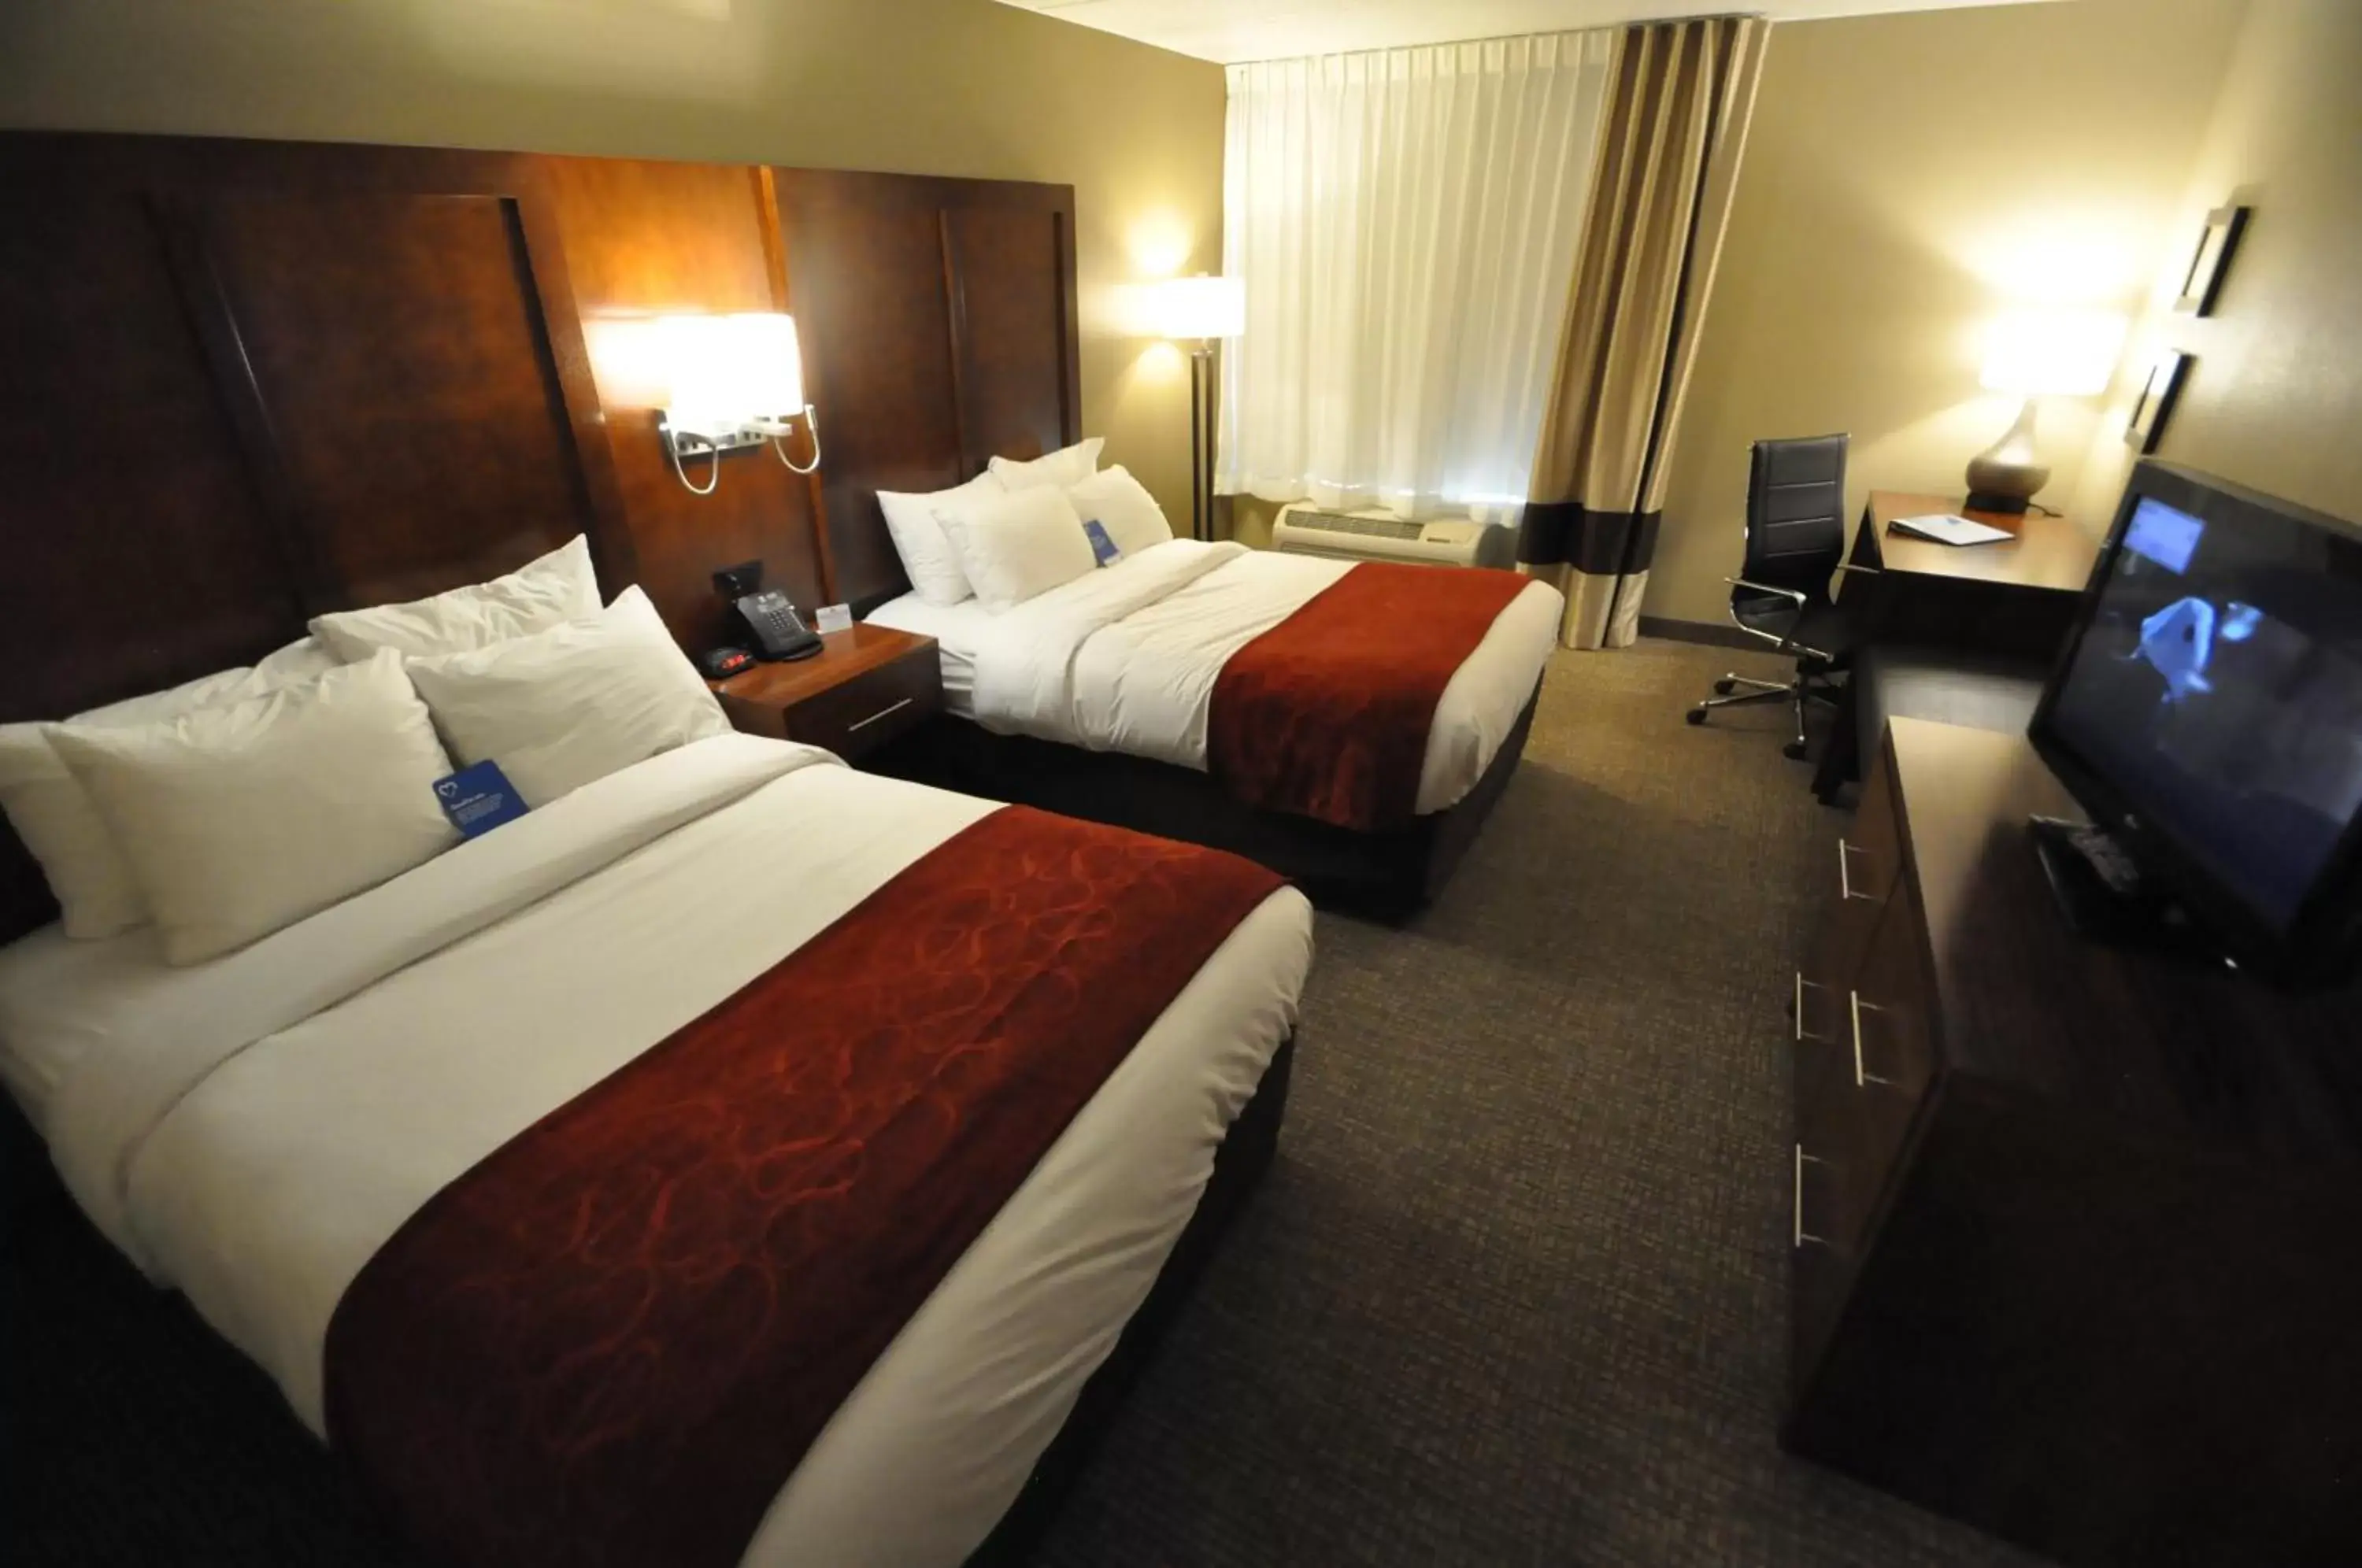 Bed, Room Photo in Comfort Inn & Suites Aberdeen